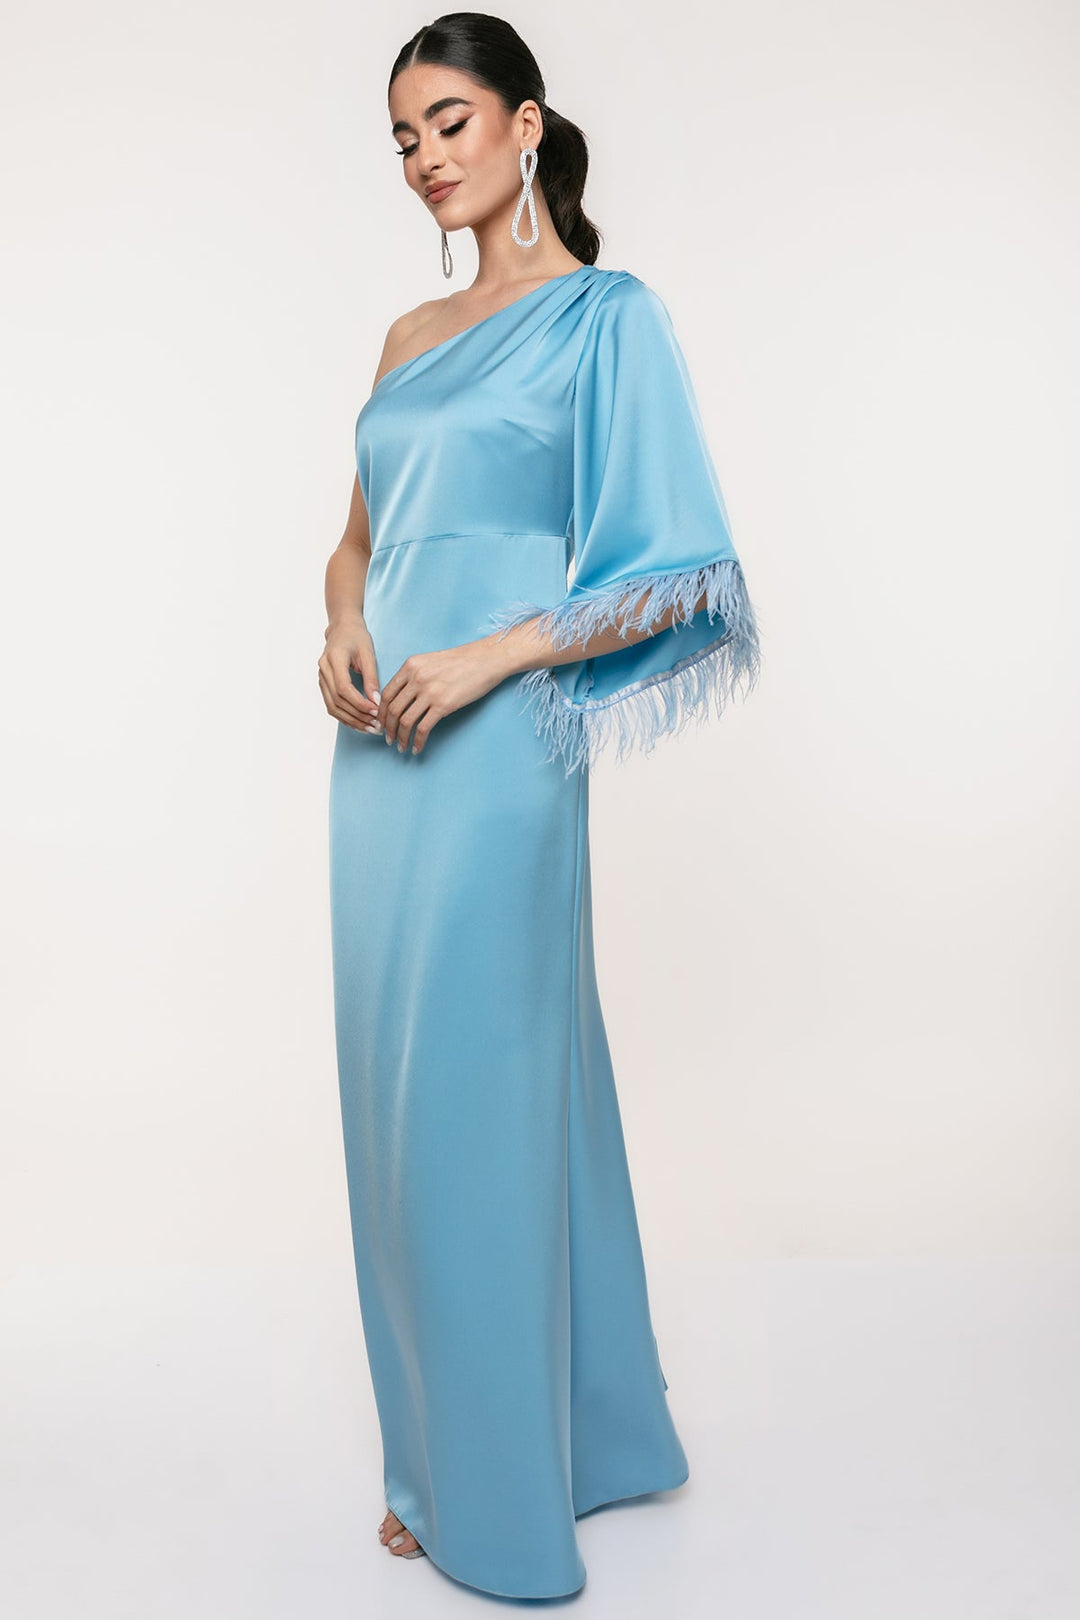 Φόρεμα μάξι ένας ώμος με πούπουλα Coelia - A Collection Boutique